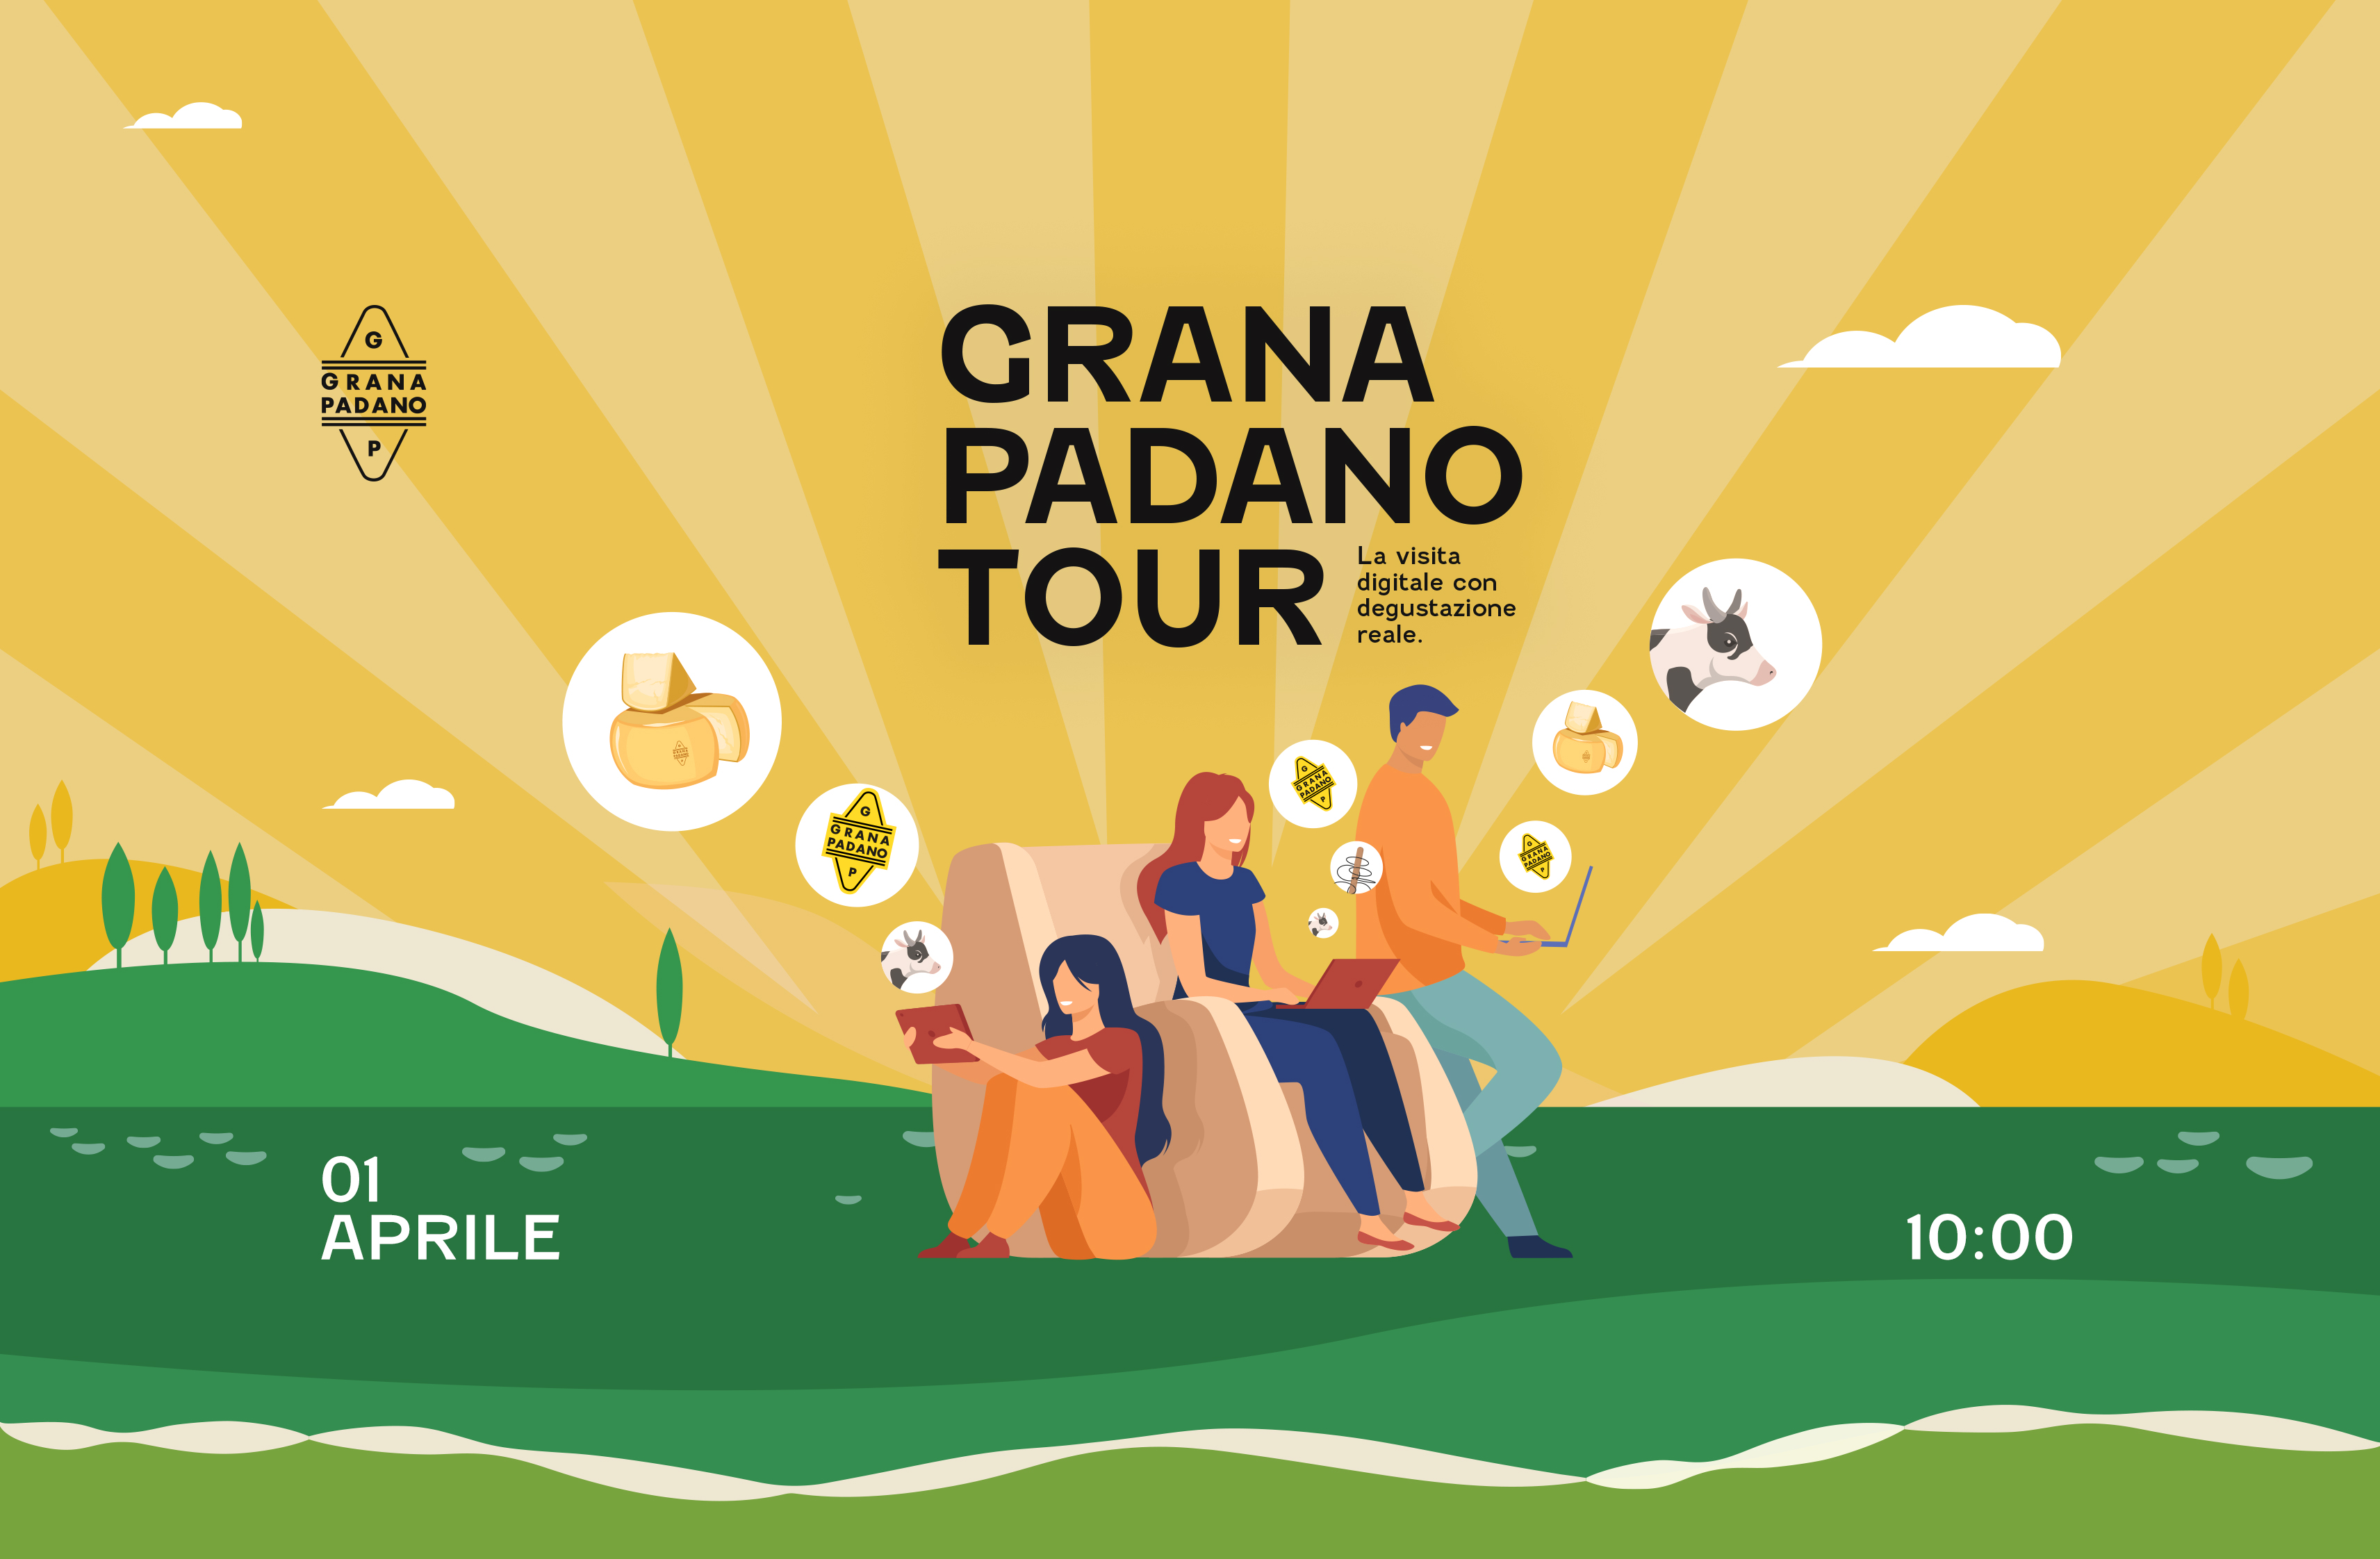 GRANA PADANO TOUR: VISITA VIRTUALE ALLE RADICI DEL GUSTO